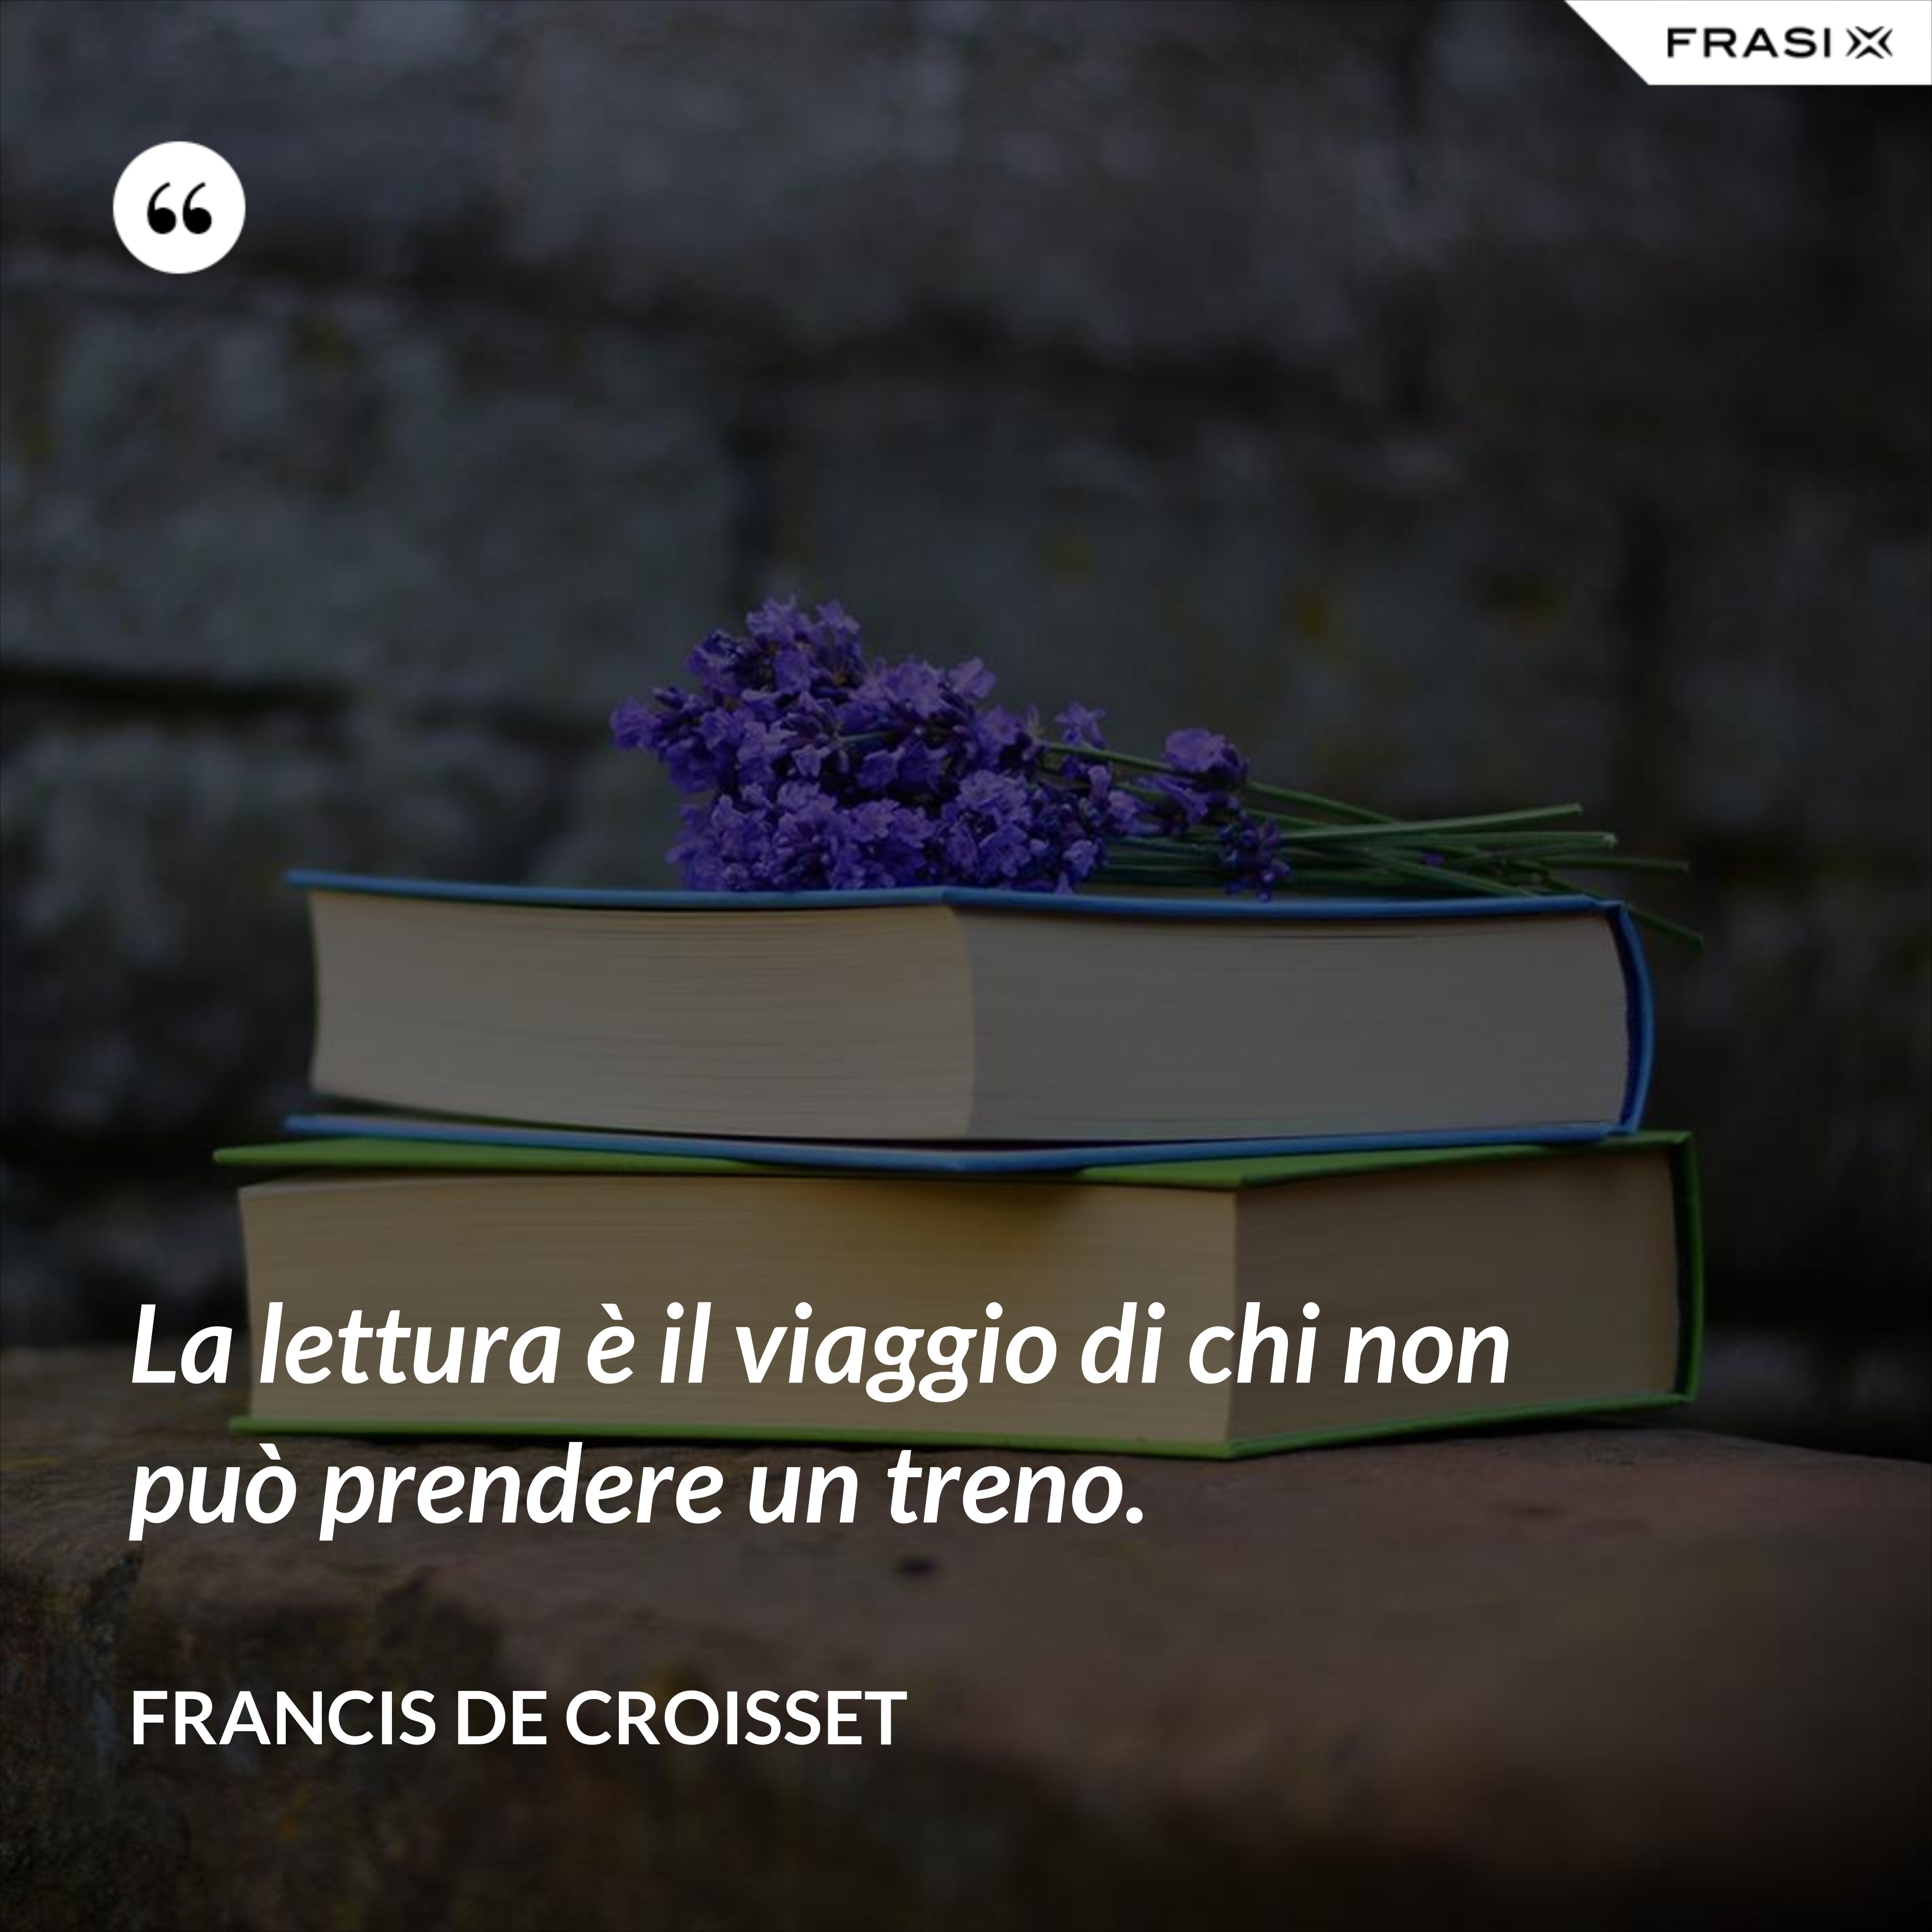 La lettura è il viaggio di chi non può prendere un treno. - Francis de Croisset